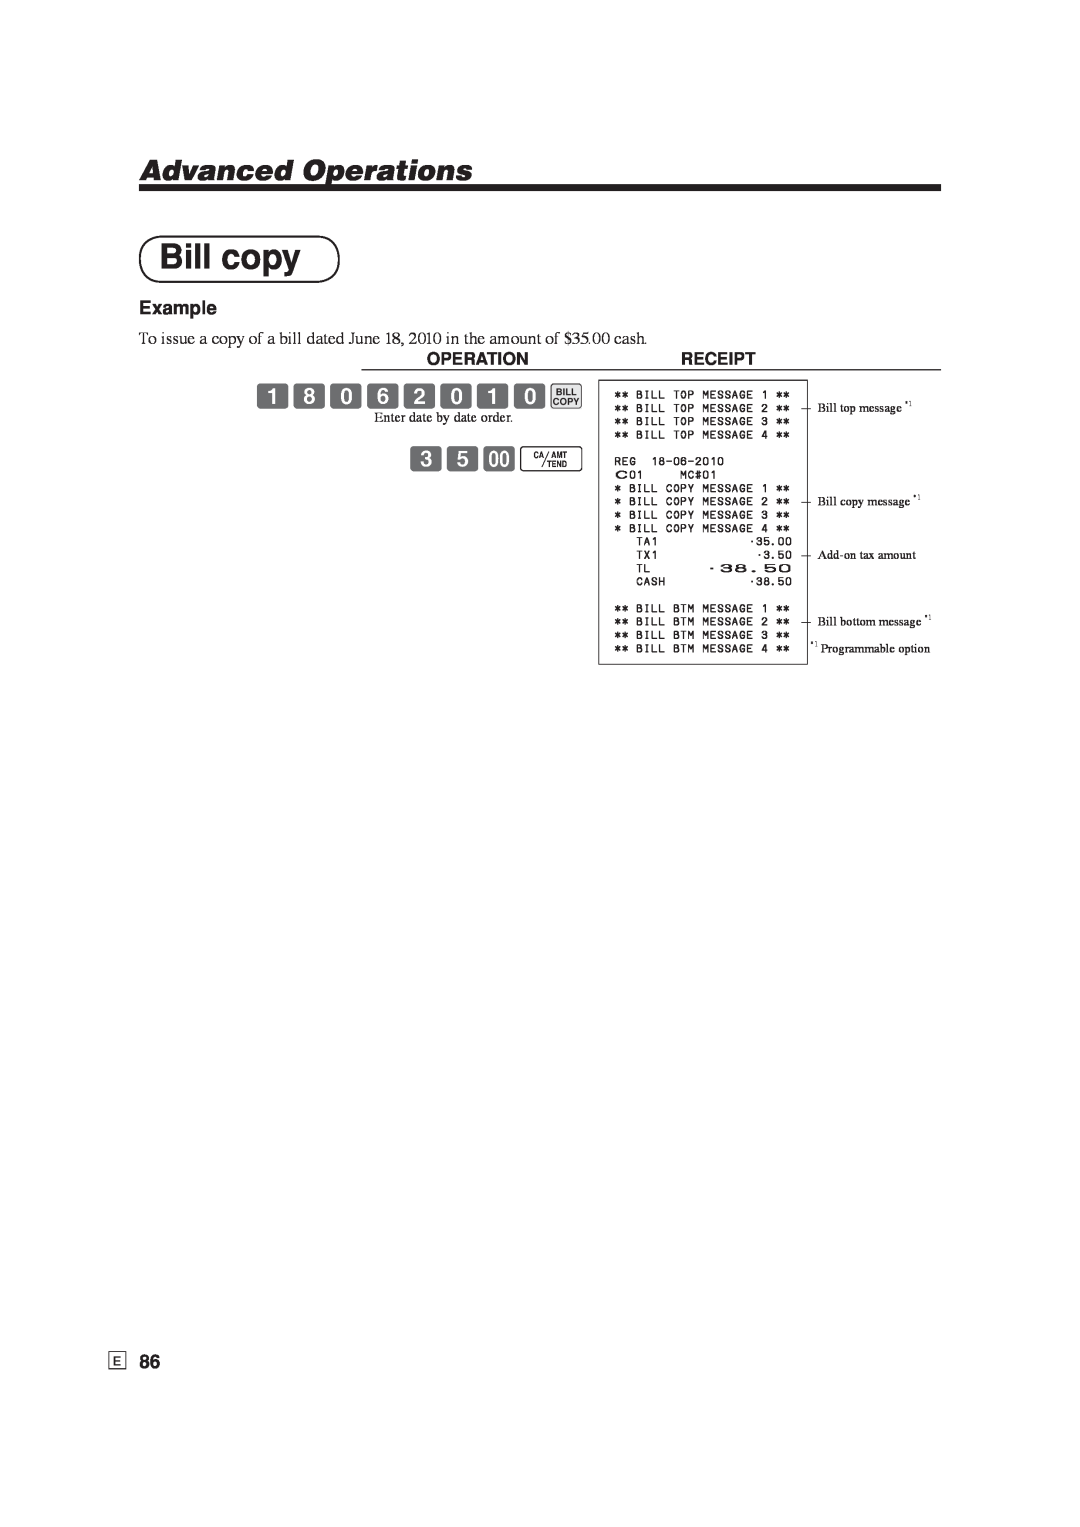 Casio SE-S6000, SE-C6000 user manual Bill copy, 18062010BILL, 35-F, Advanced Operations, Example 